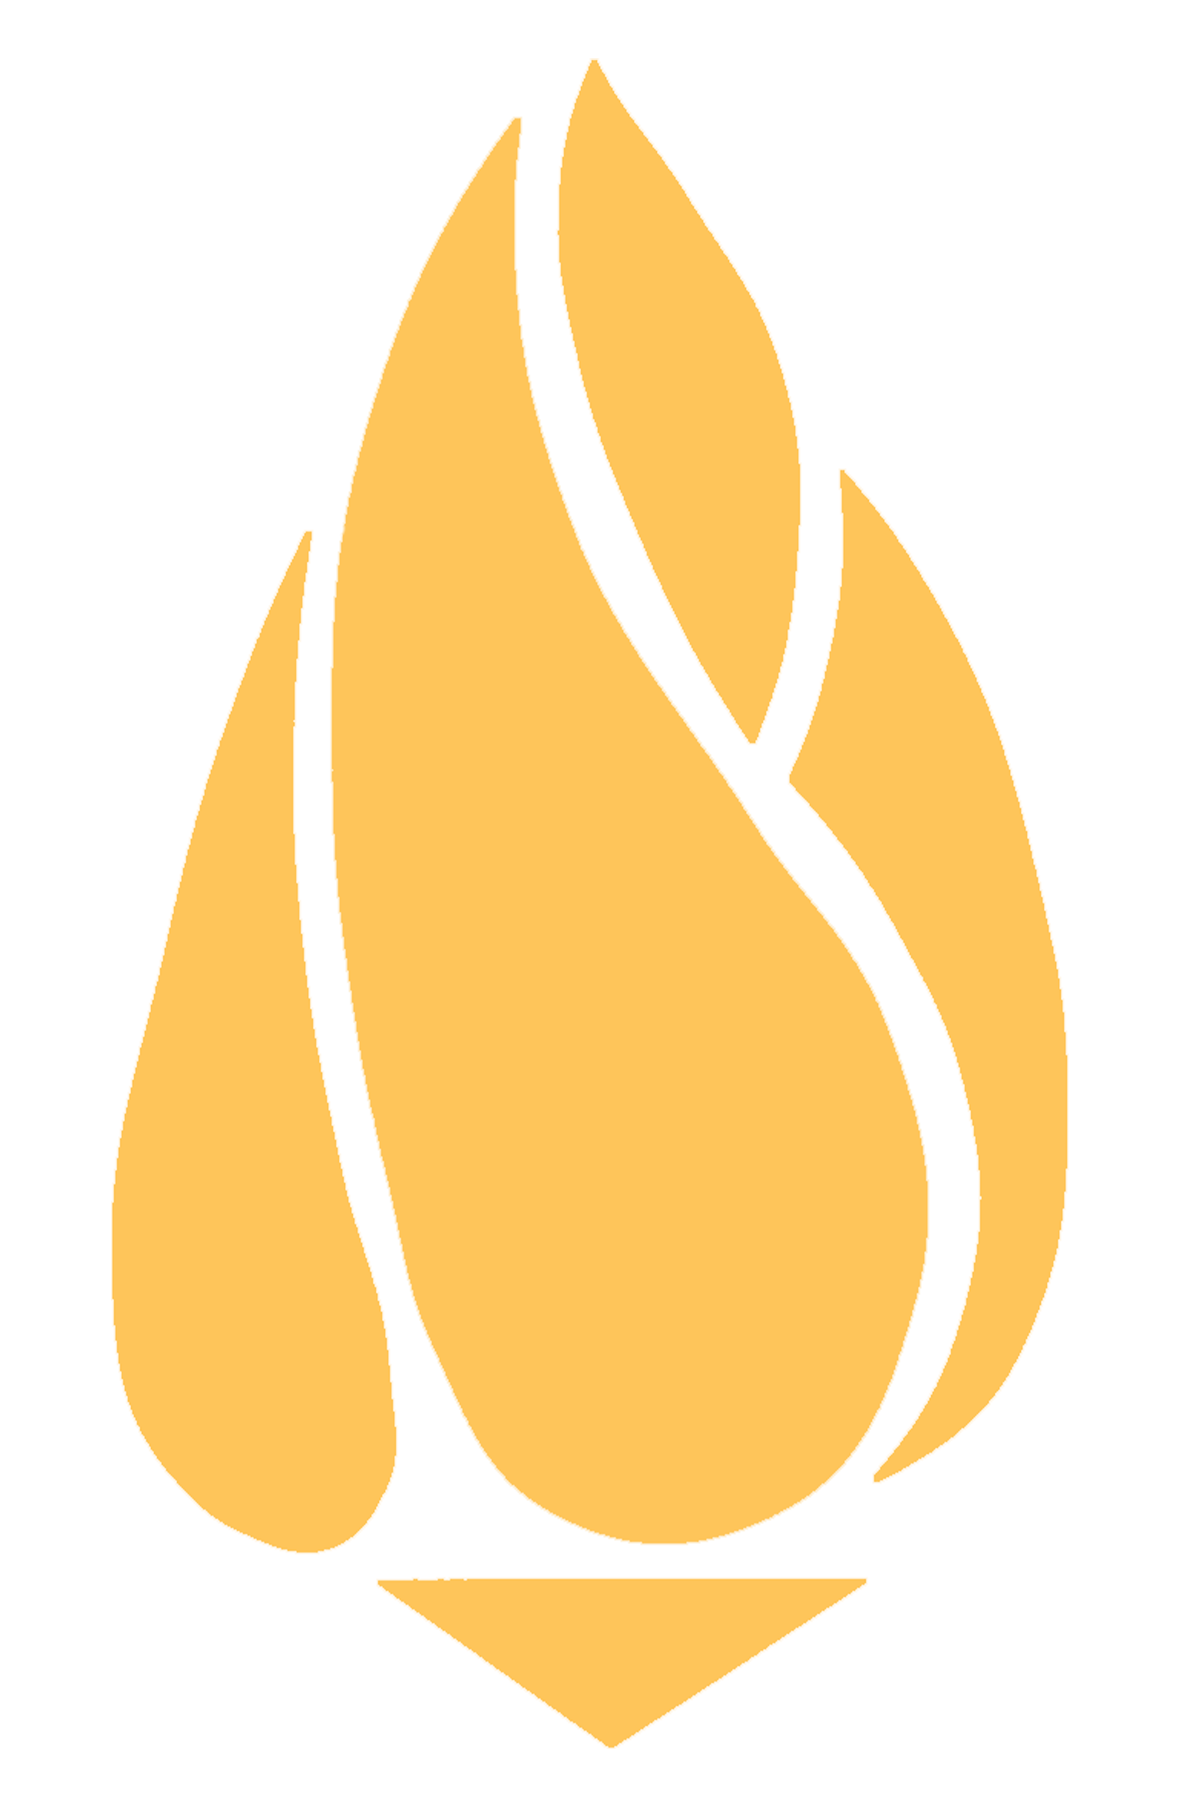 Historic Gas Light Society logo